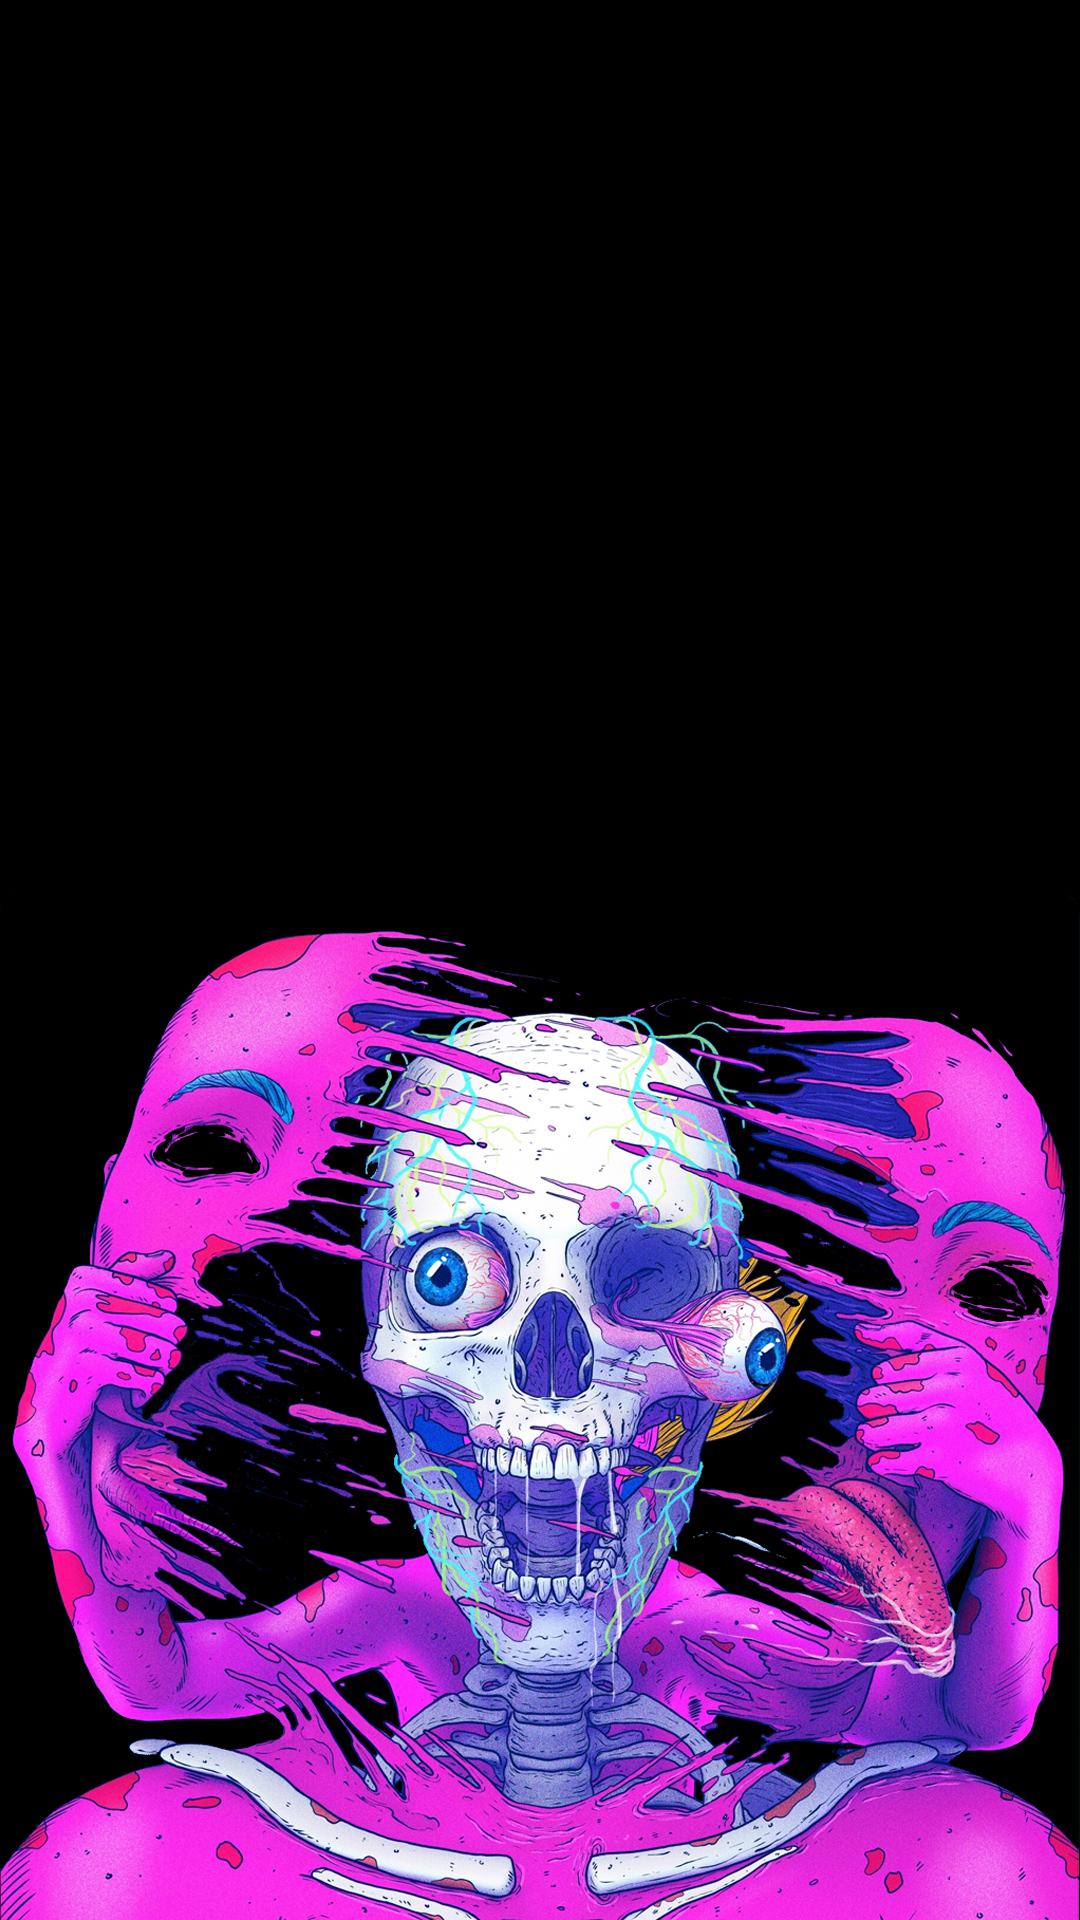 Color Skulls 03 63x133cms iphone Wallpaper  NFT  Poster  We Love Pop  Art by ironbirdman  OpenSea